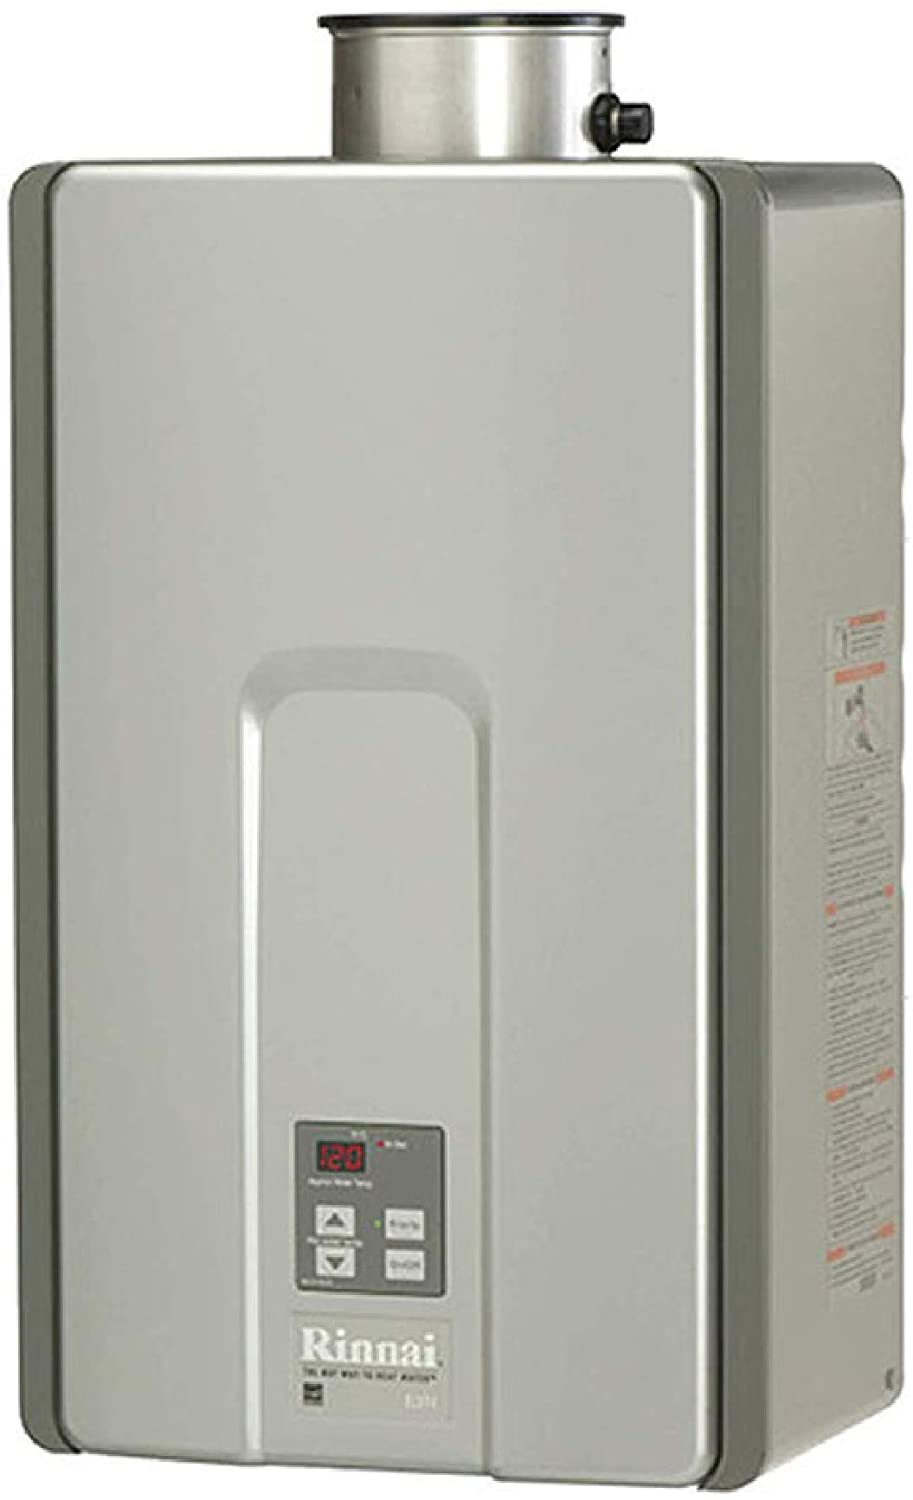 Rinnai RL94iP Propane Gas Tankless Hot Water Heater